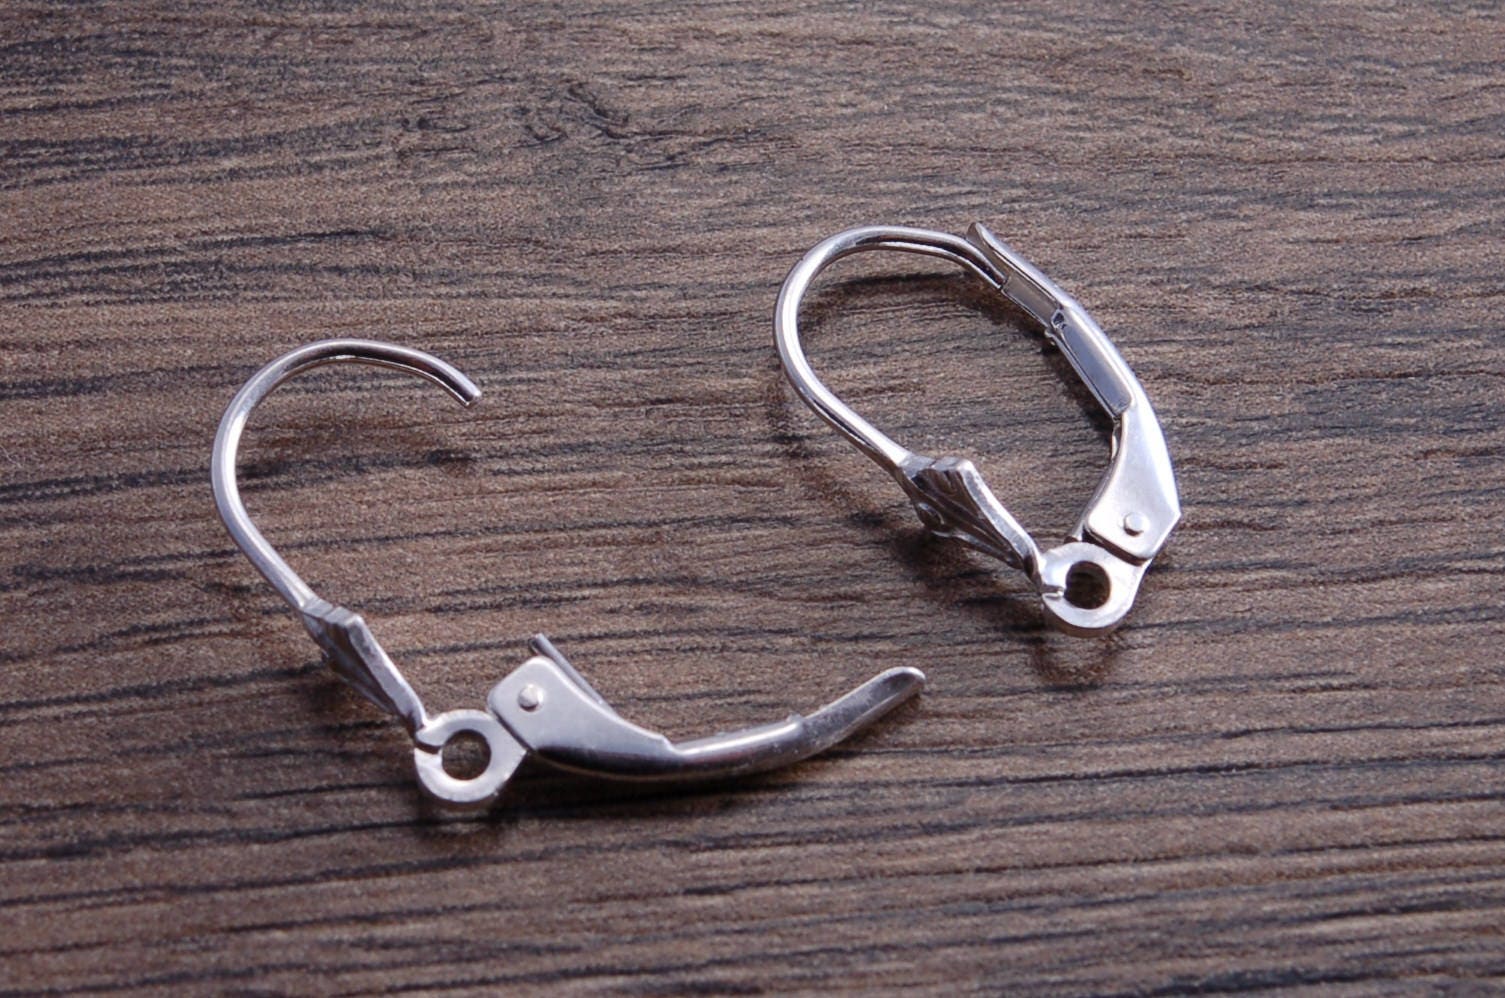 Sterling Silver U Shape Earring Plain Leverback, S925 Silver Ear Wire Hoop  Earrings for Jewelry Making Supplies,simple Earring Lever Back 